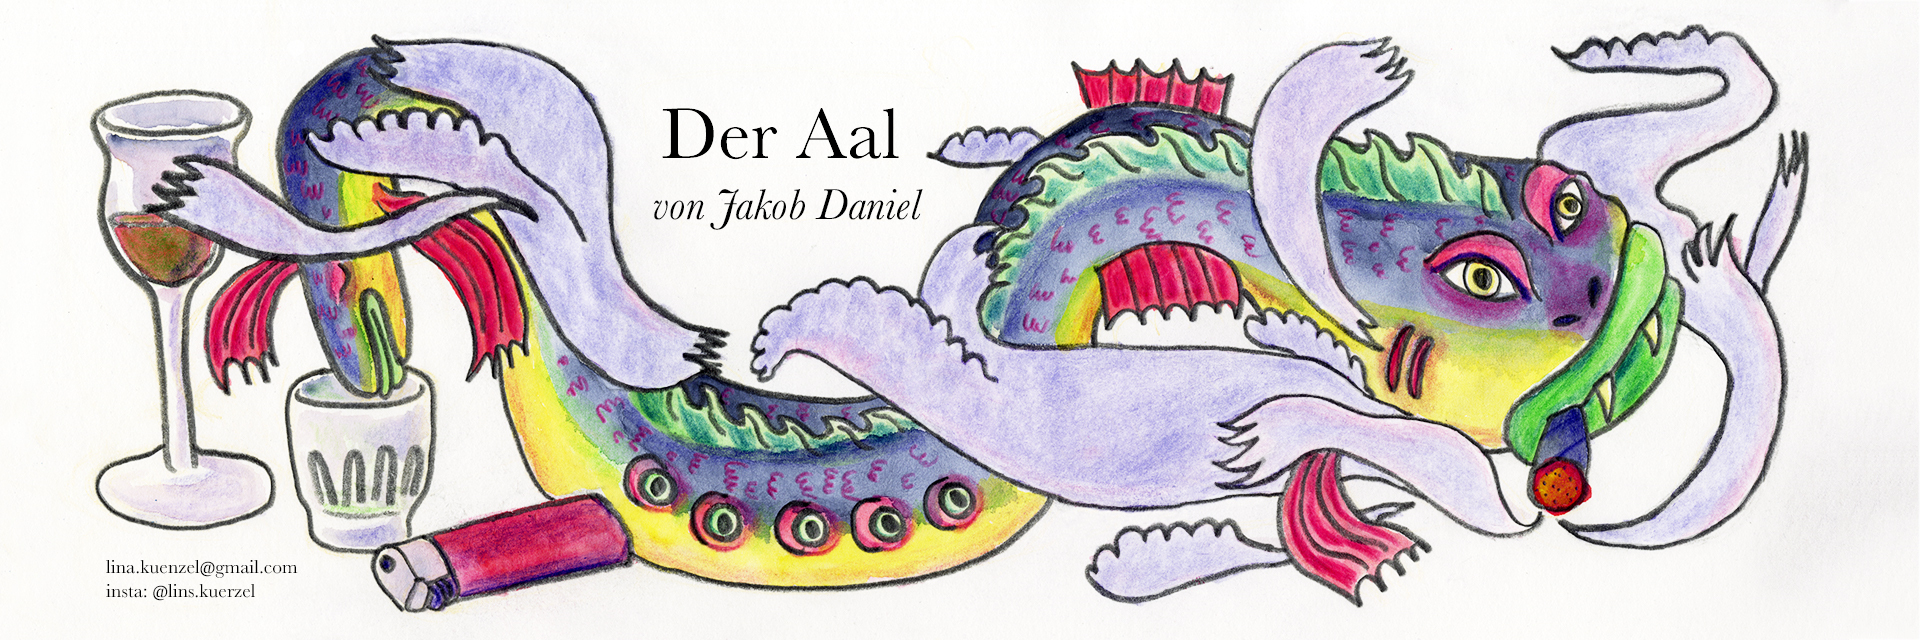 Illustration zu "Der Aal" von Lina Künzel